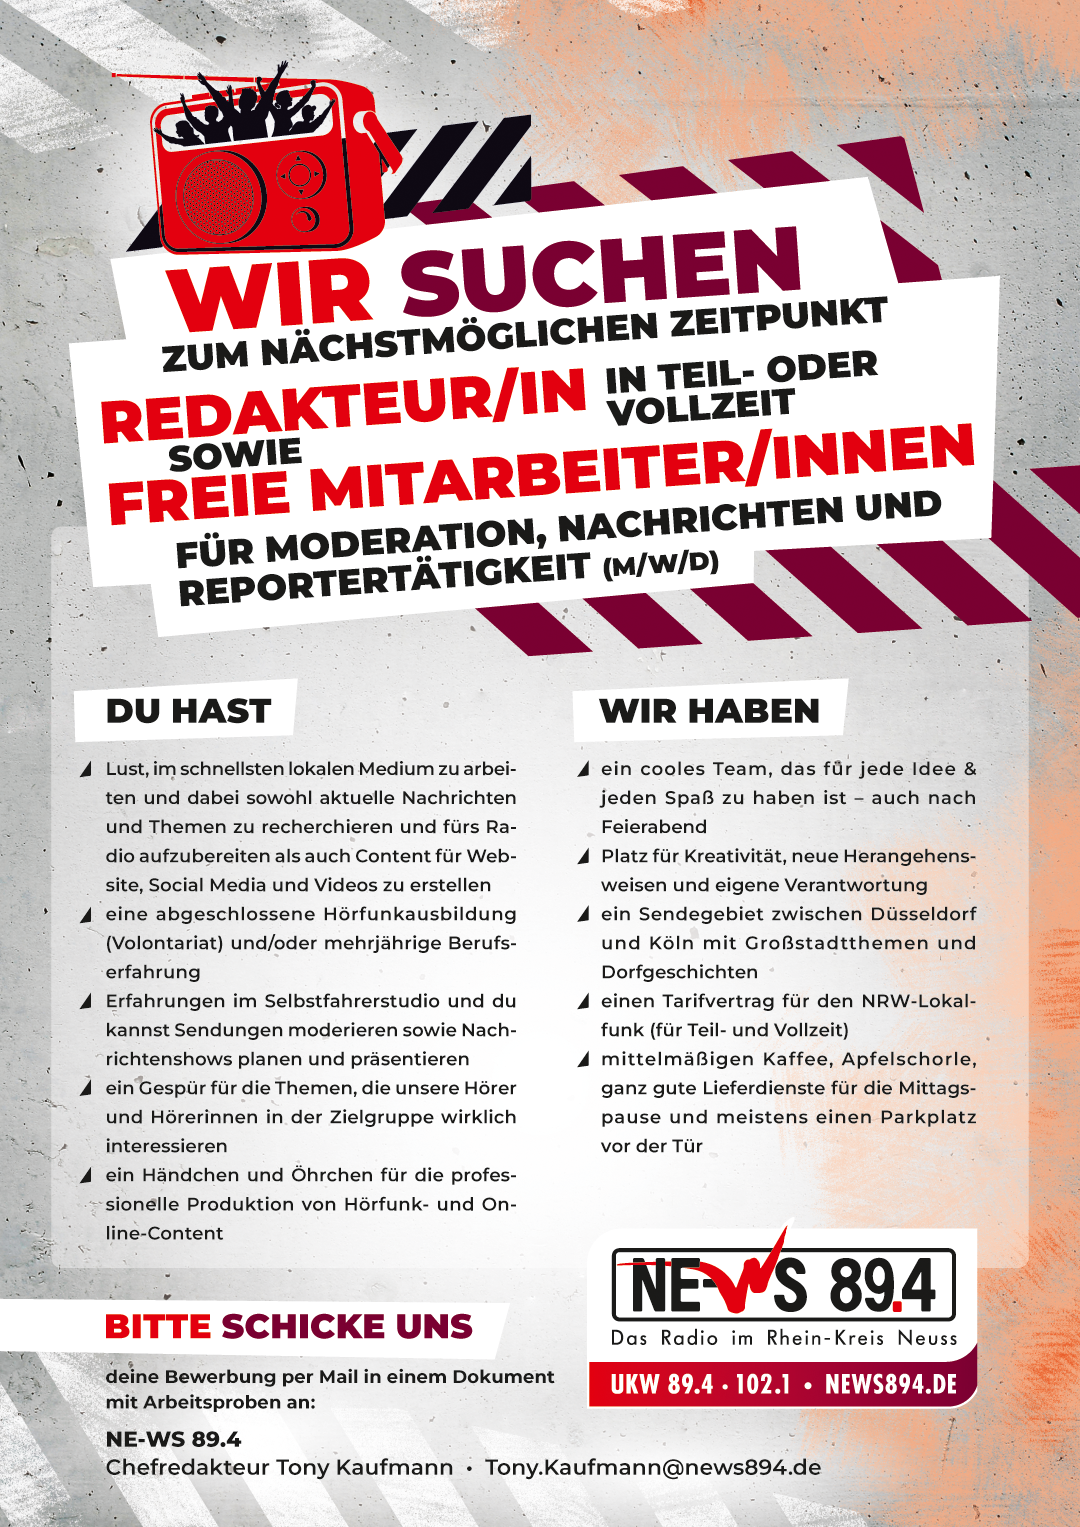 NE-WS 89.4 sucht zum nächstmöglichen Zeitpunkt Redakteur/in und freie Mitarbeiter/innen für Moderation, Nachrichten und Reportertätigkeit (m/w/d)